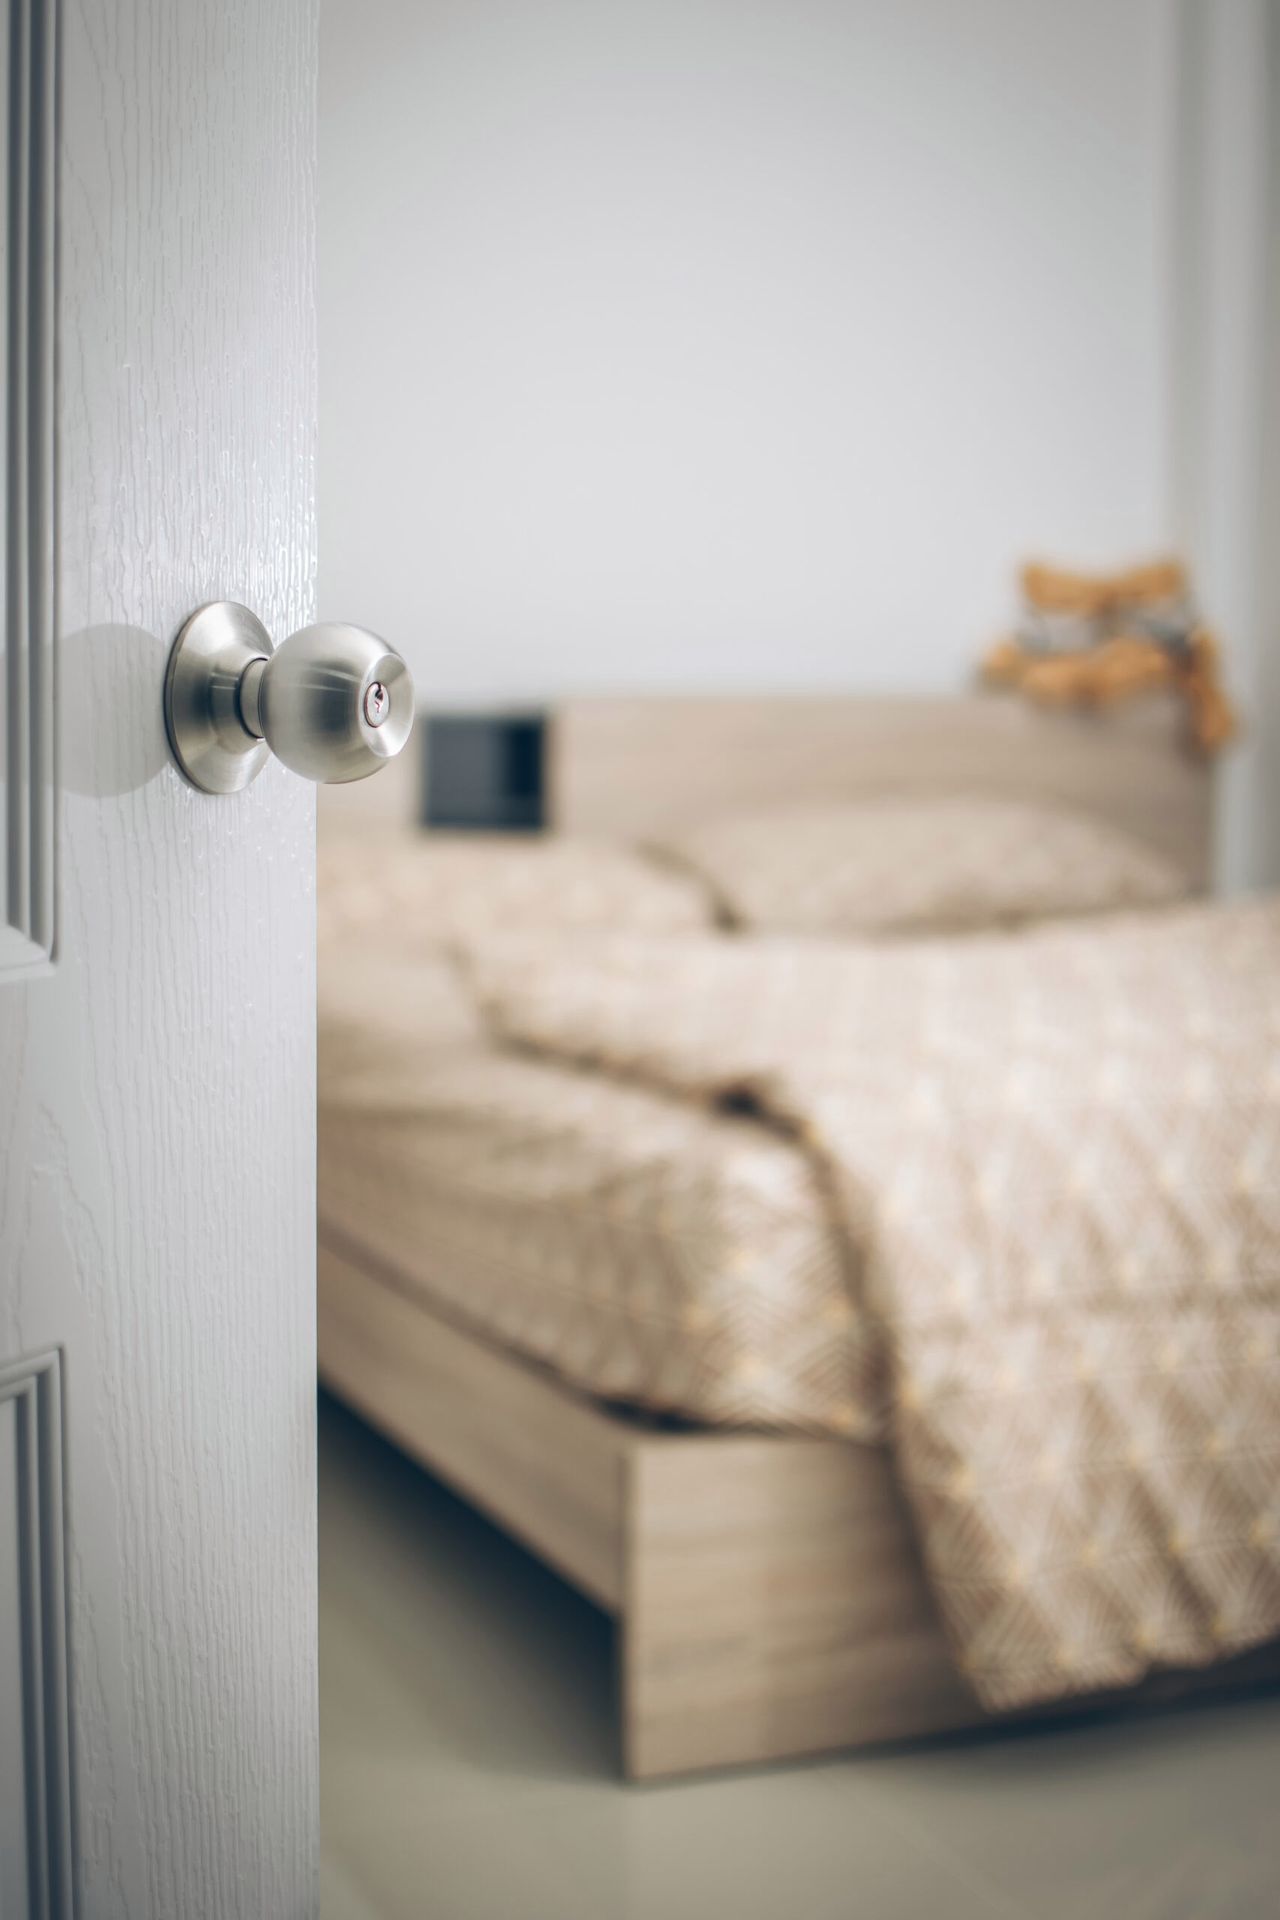 Otwarte drzwi do sypialni mogą być źródłem niebezpieczeństwa, fot. Freepik